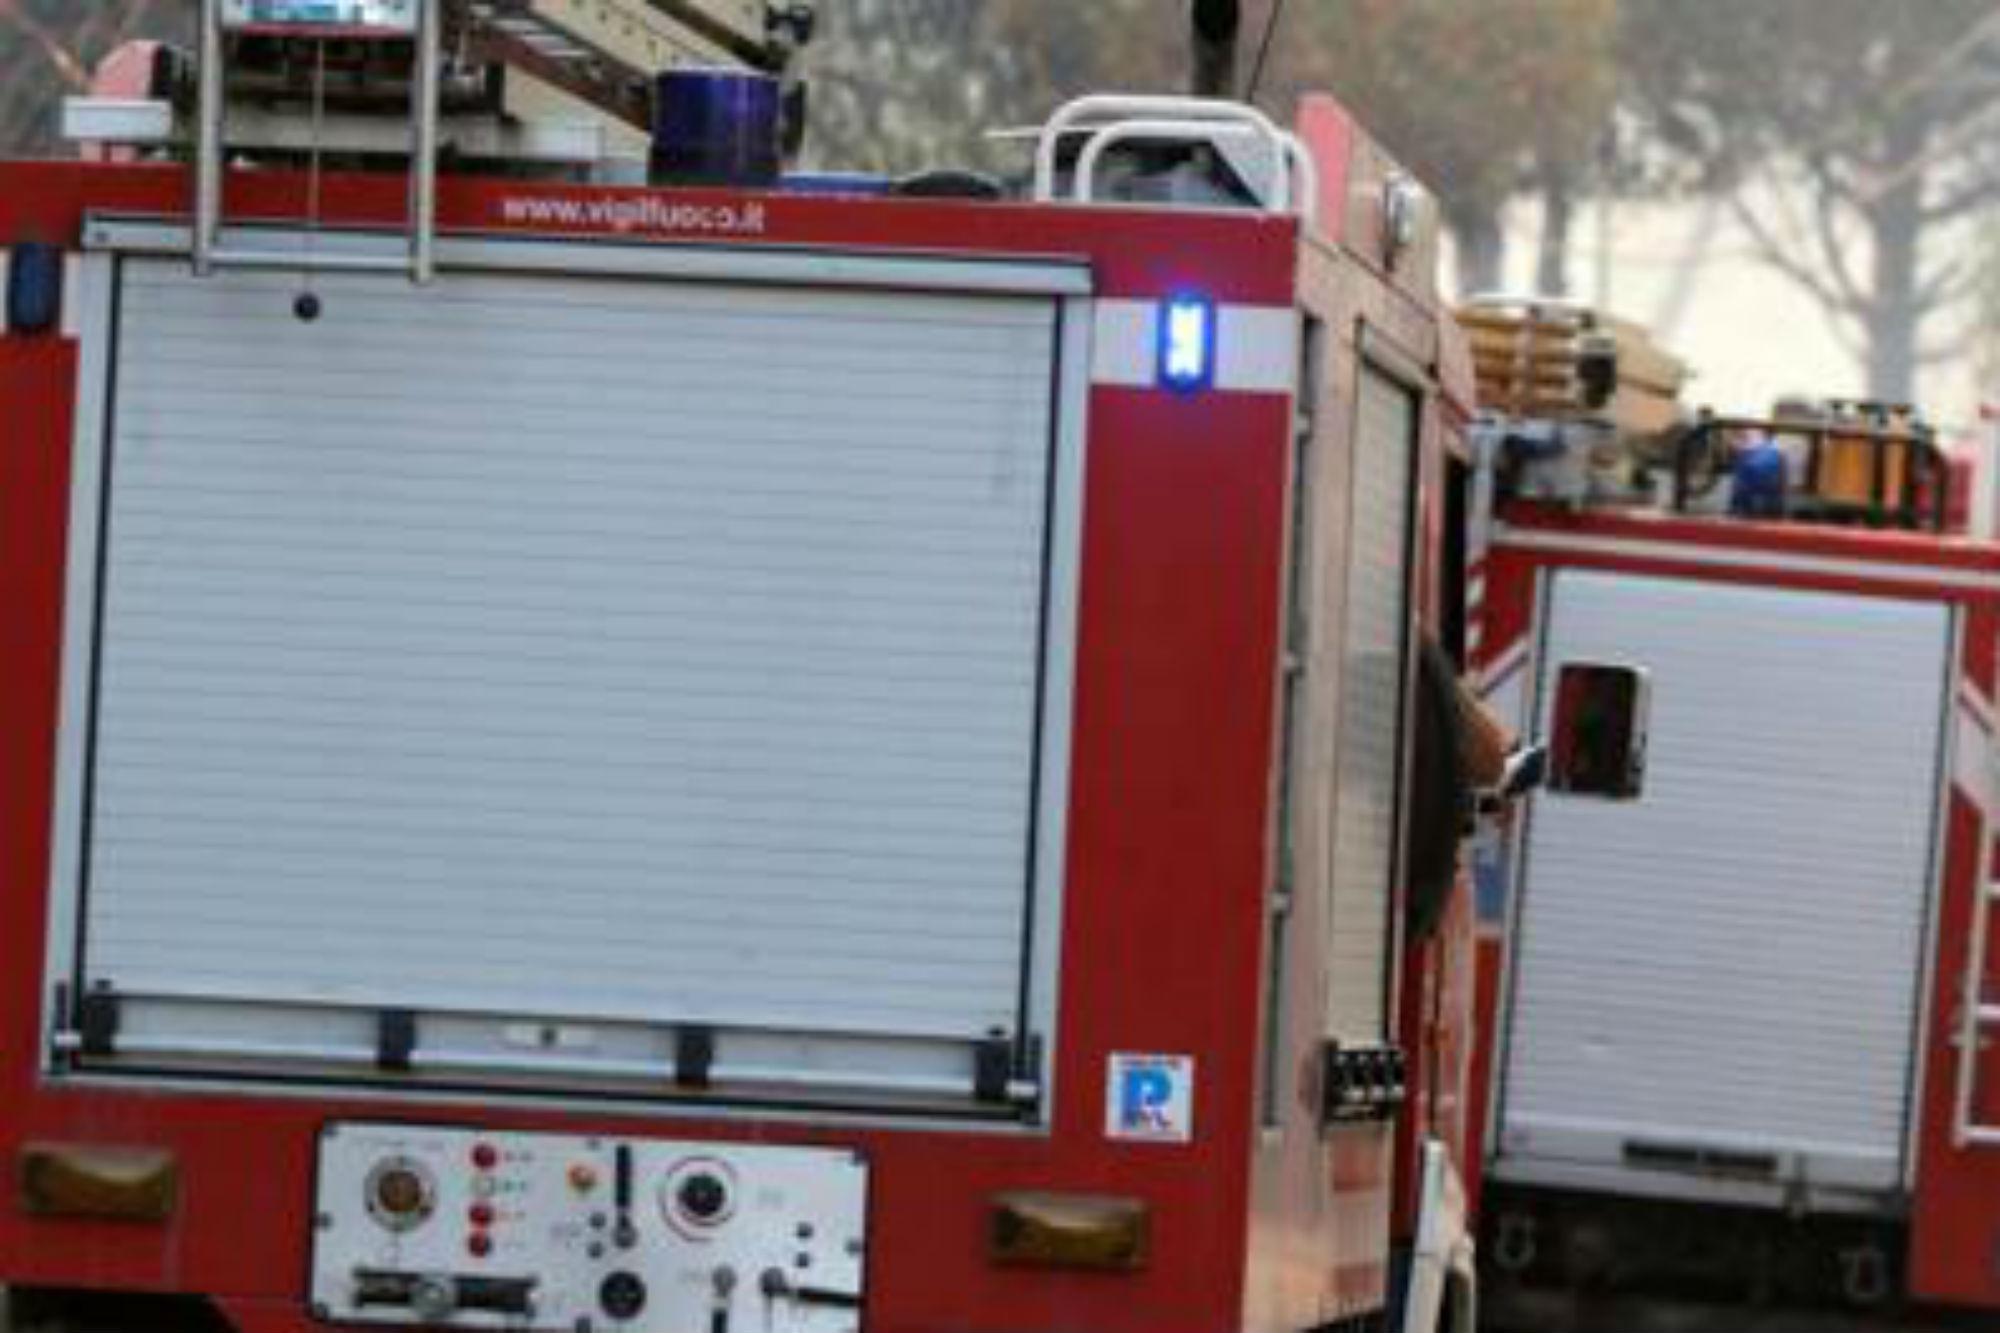 Roma - vasto incendio a Tor Vergata: in fiamme area tra Vela di Calatrava e Policlinico